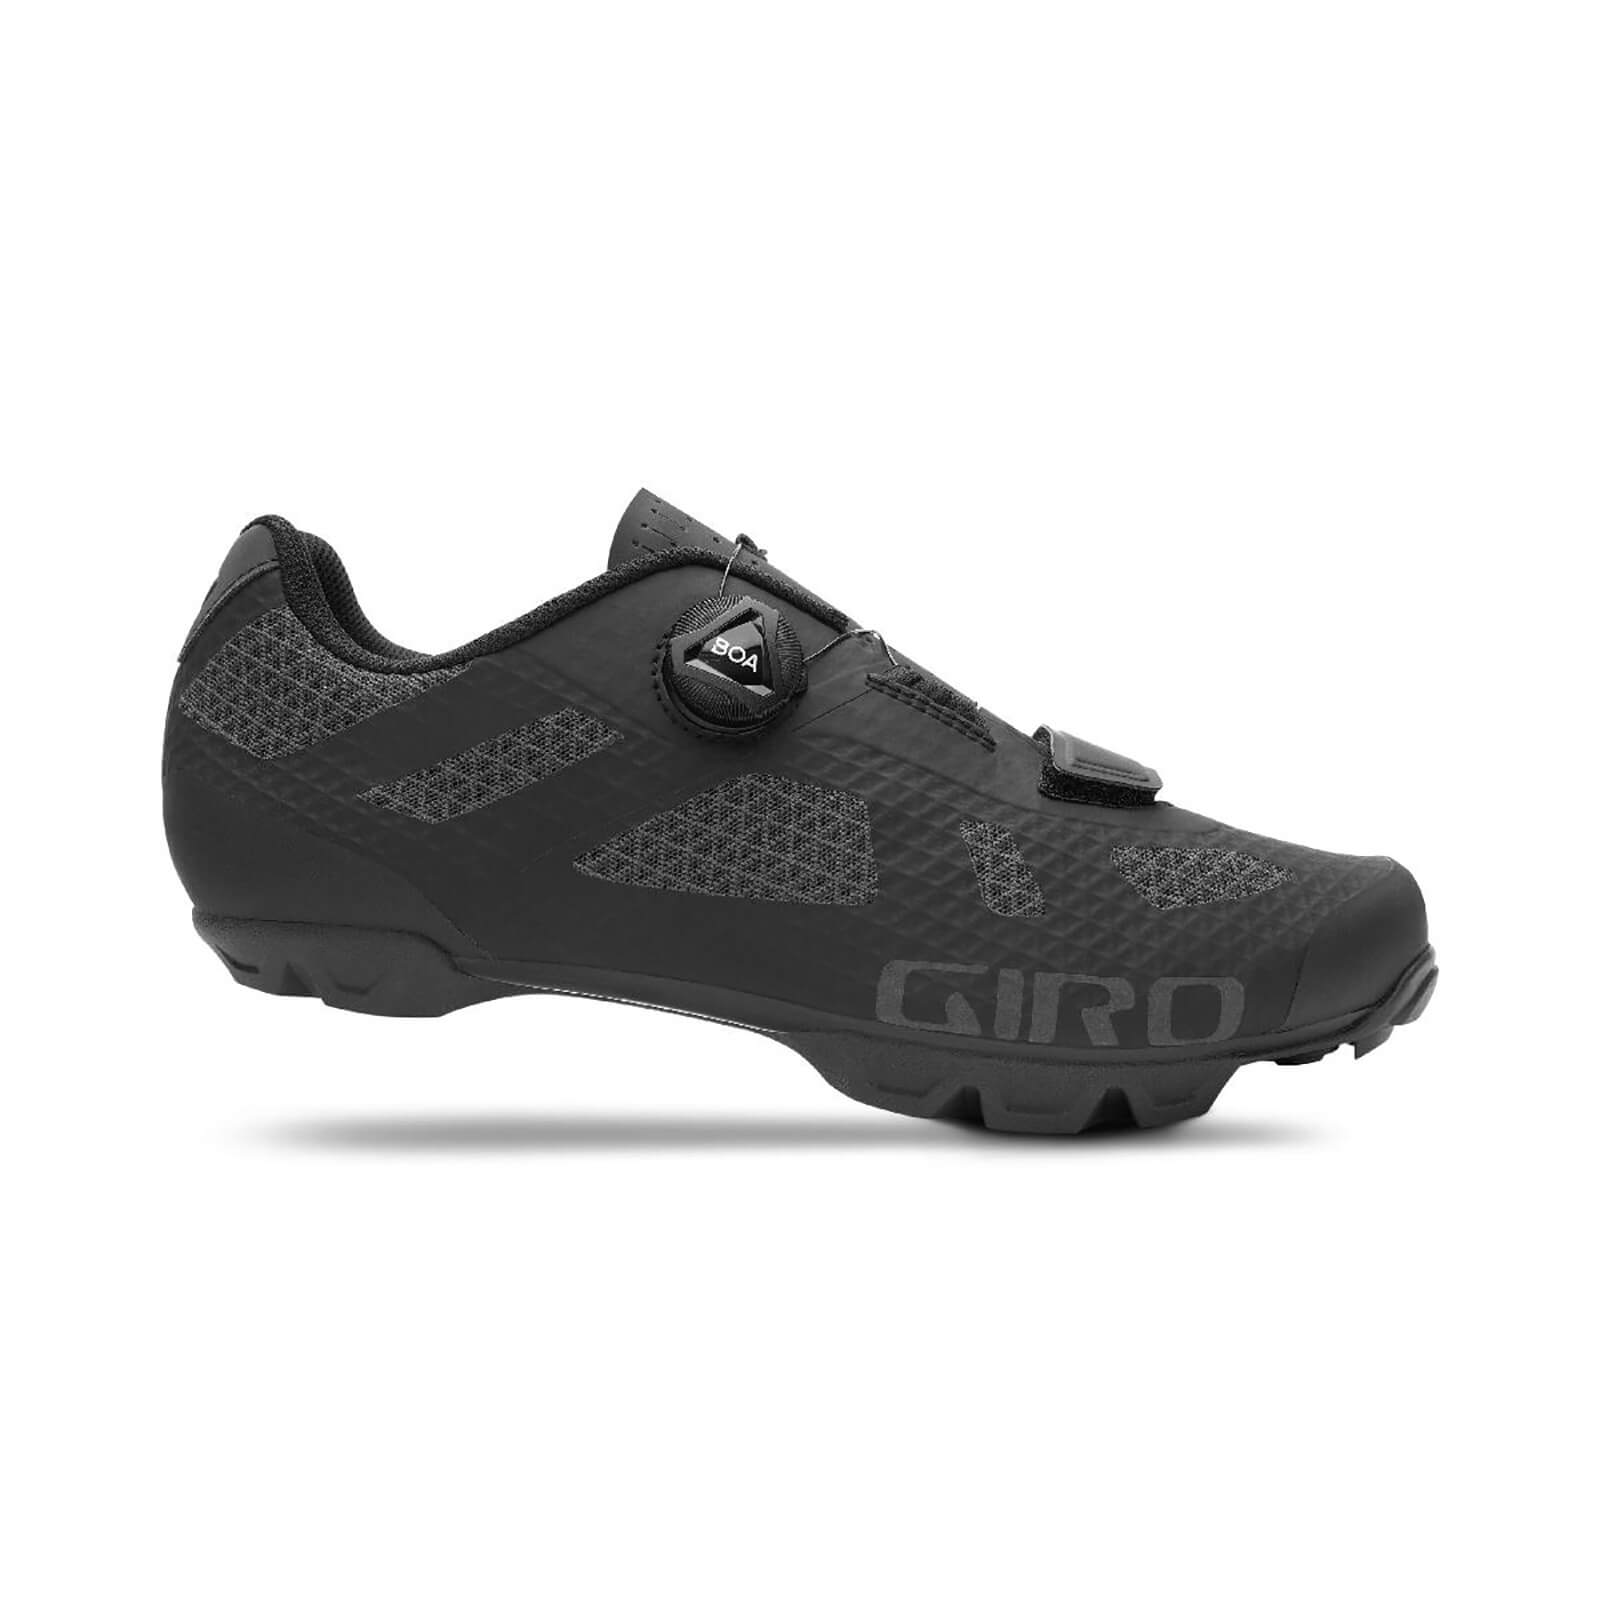 Giro Rincon MTB Shoes - EU 42 - Black